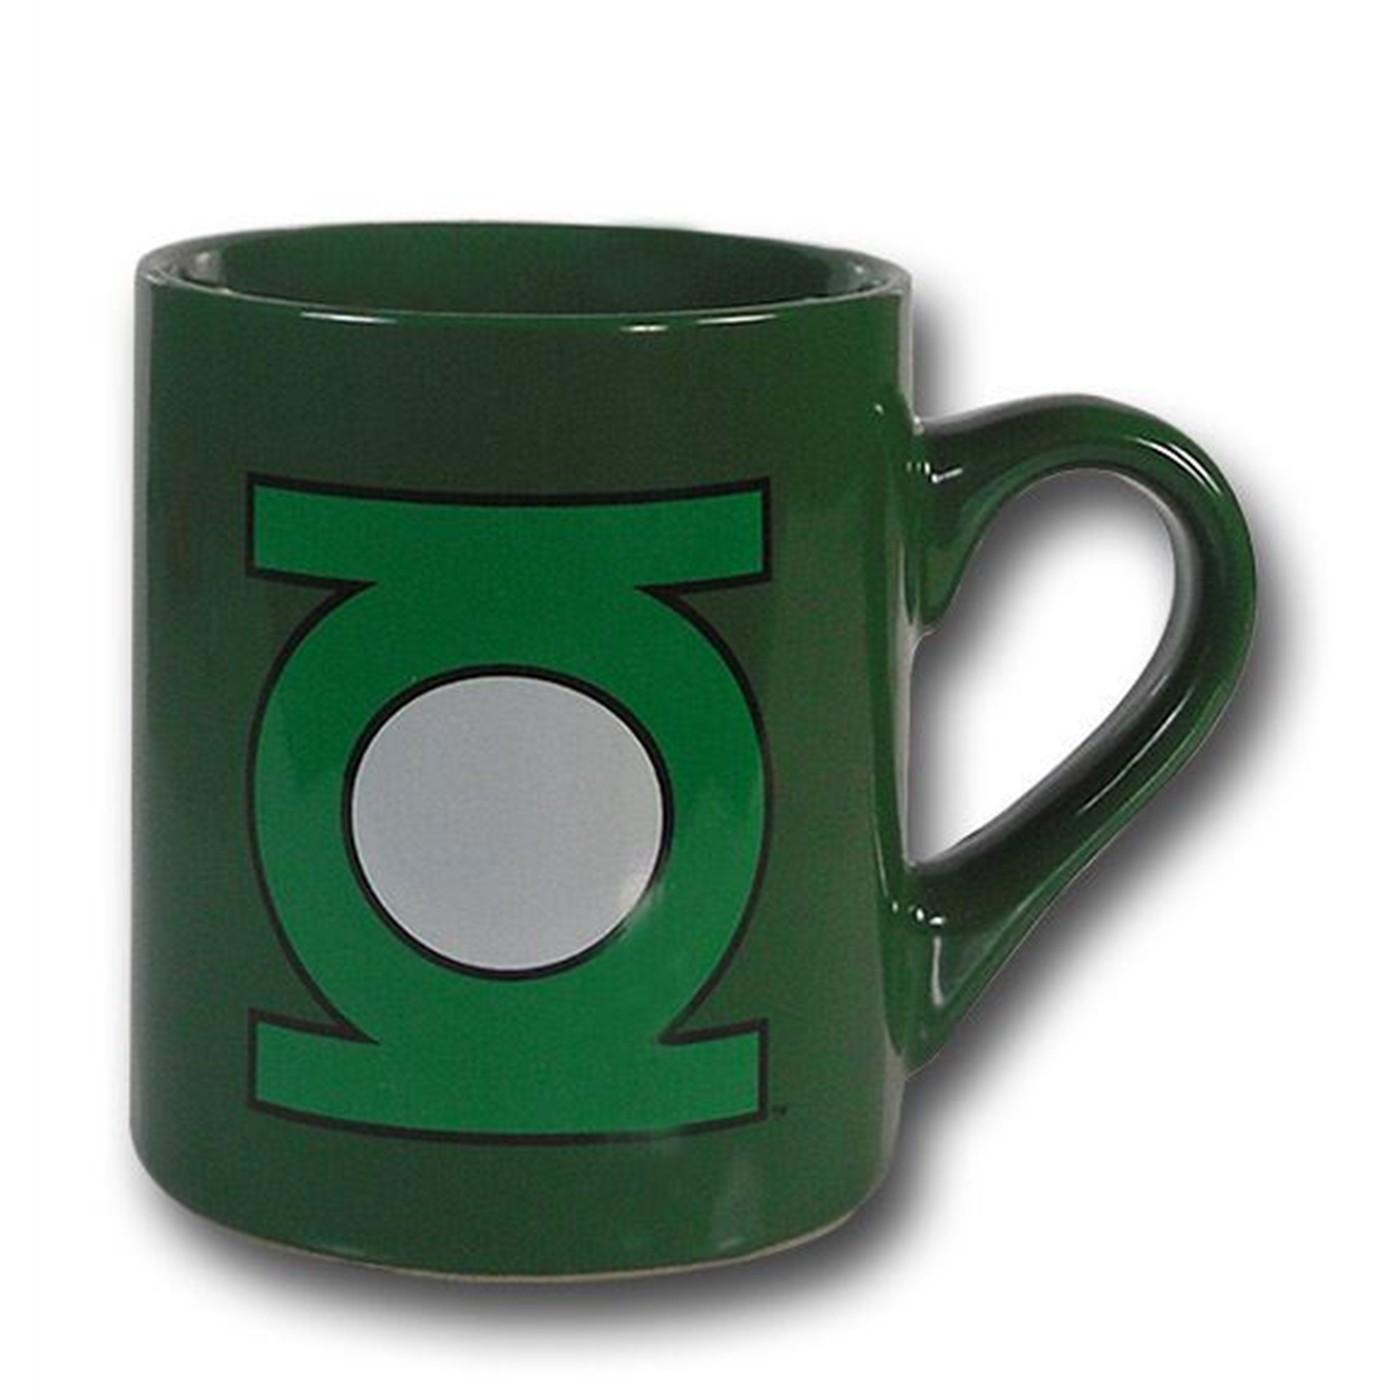 Green Lantern Green Symbol Mug